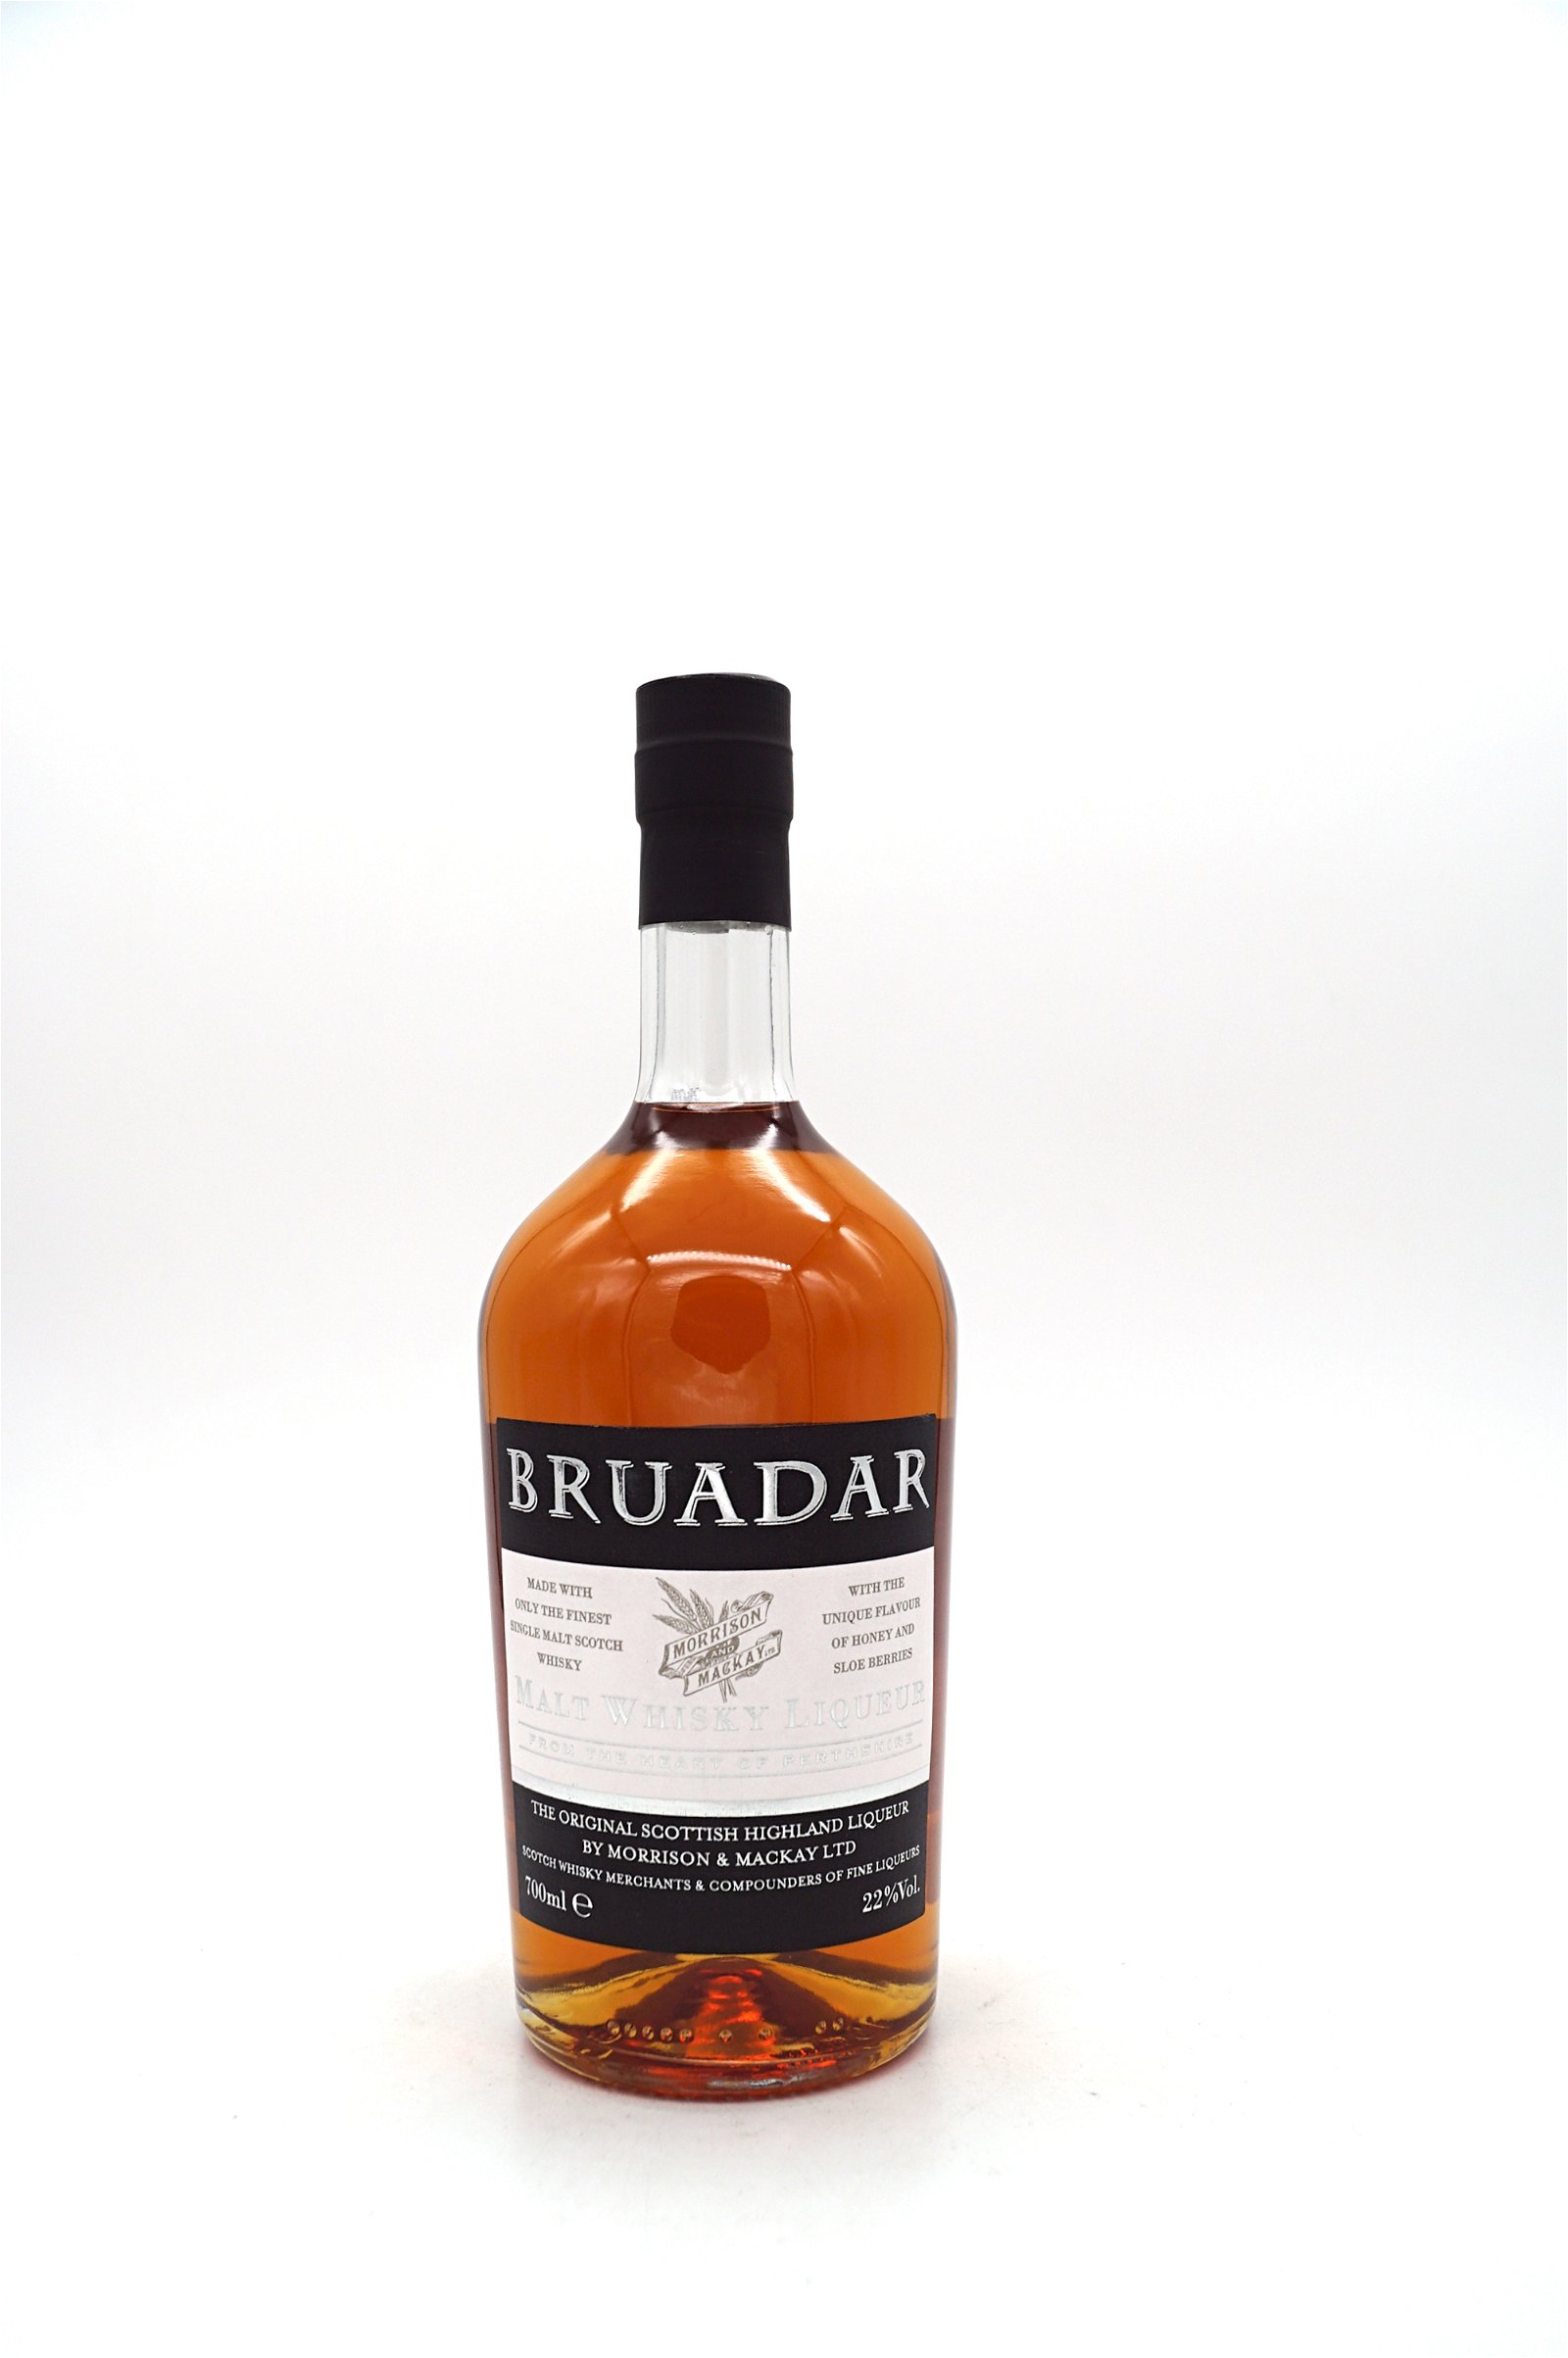 Bruadar The Original Scottish Highland Liqueur